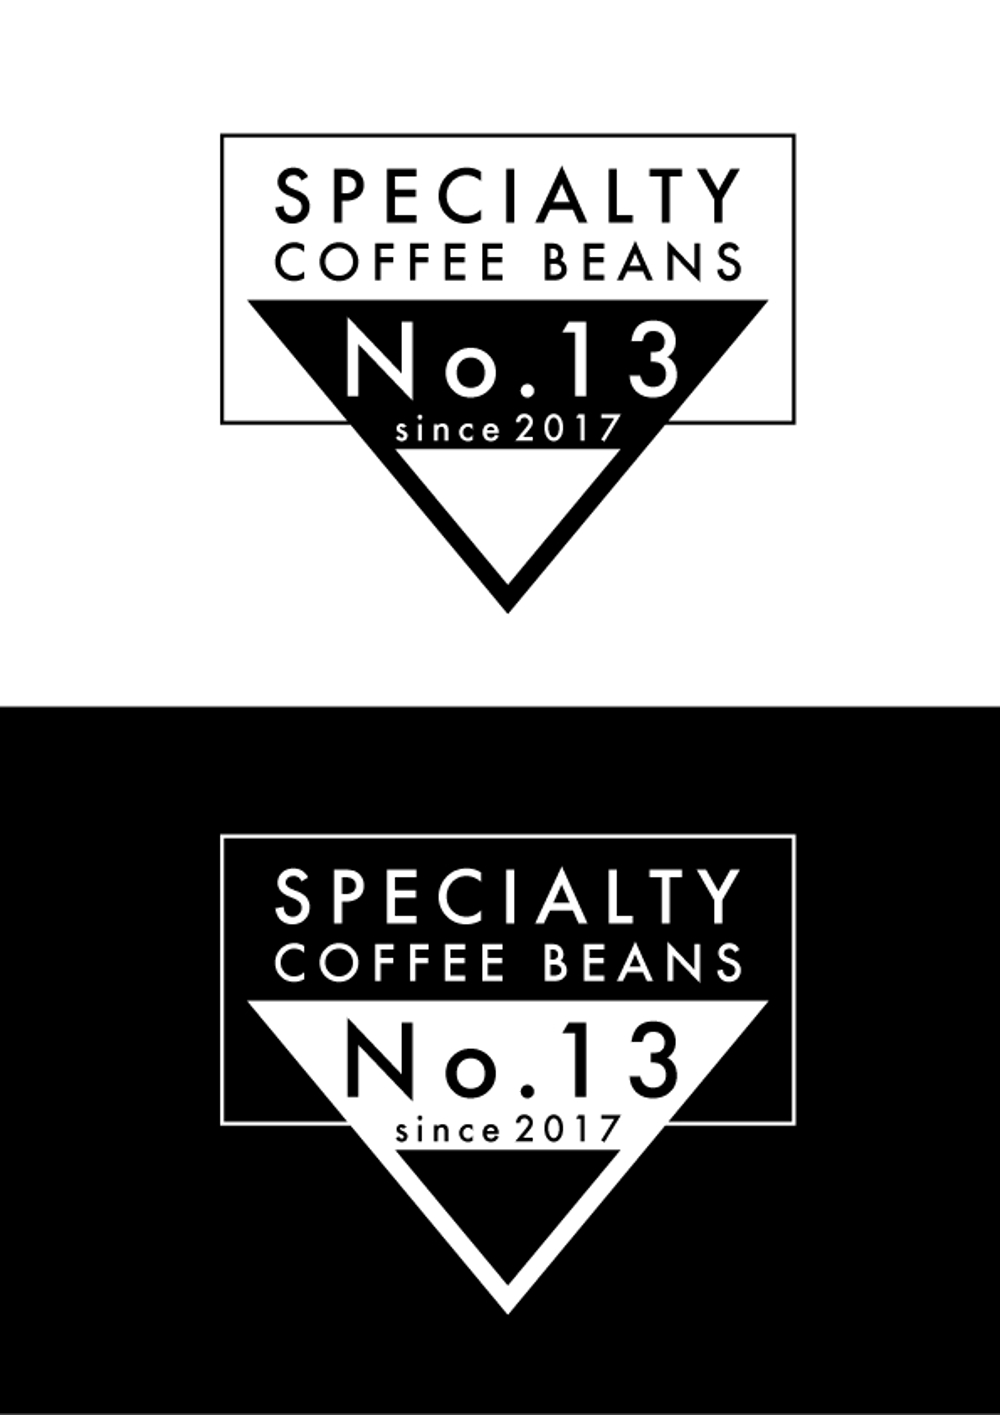 コーヒー豆の袋に張るロゴを作っていただきたい。